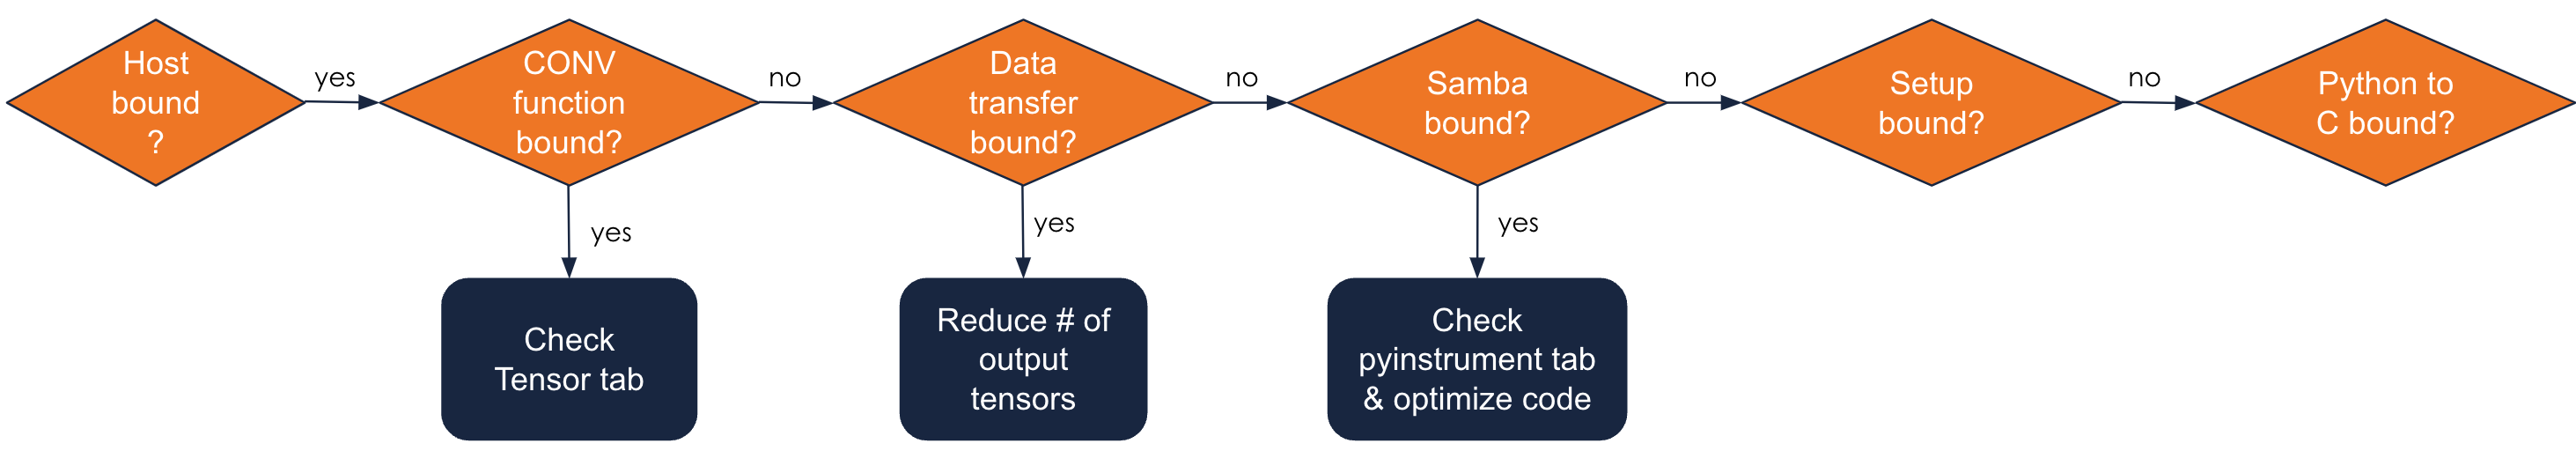 SambaTune workflow for host-bound models